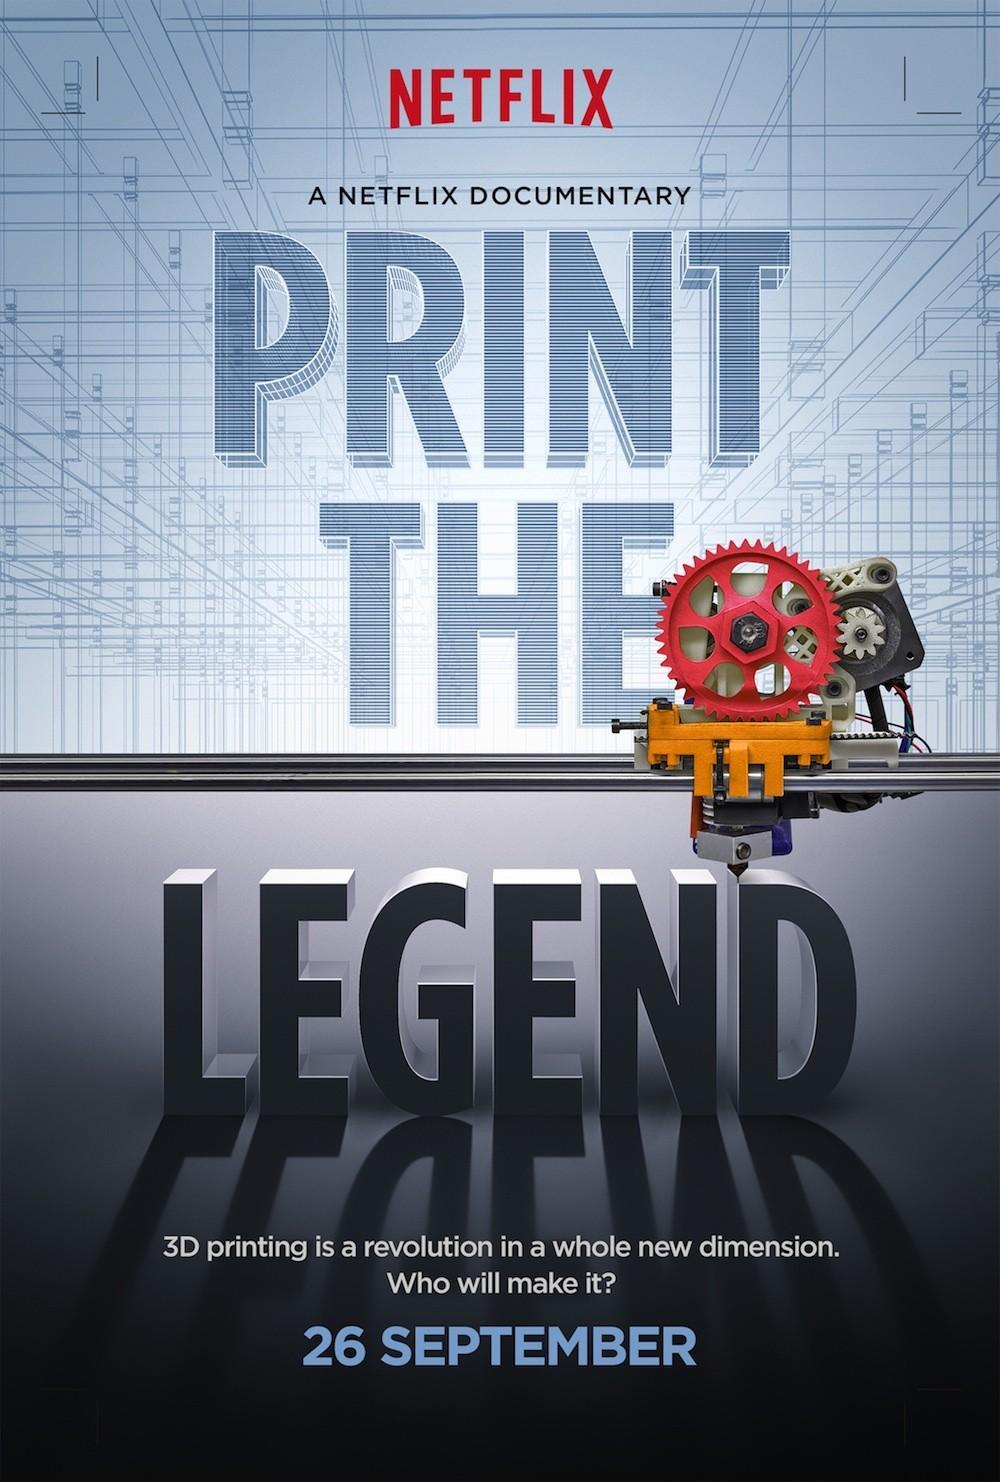 Постер фильма Принтер будущего | Print the Legend